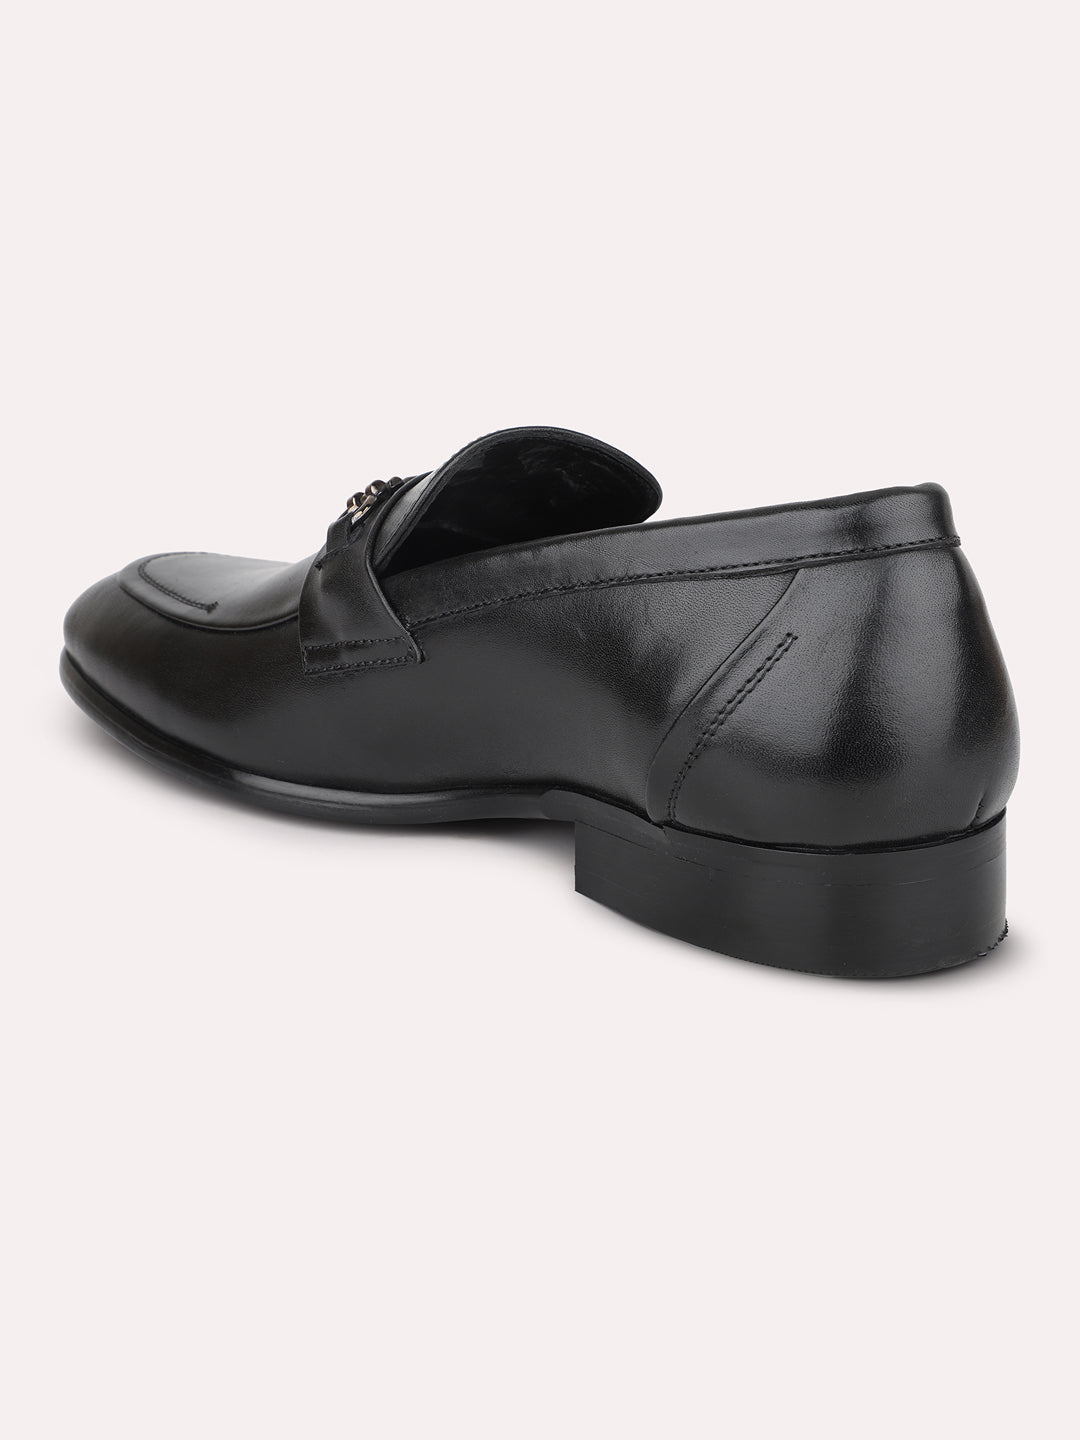 Atesber Black Solid Formal Shoes For Men